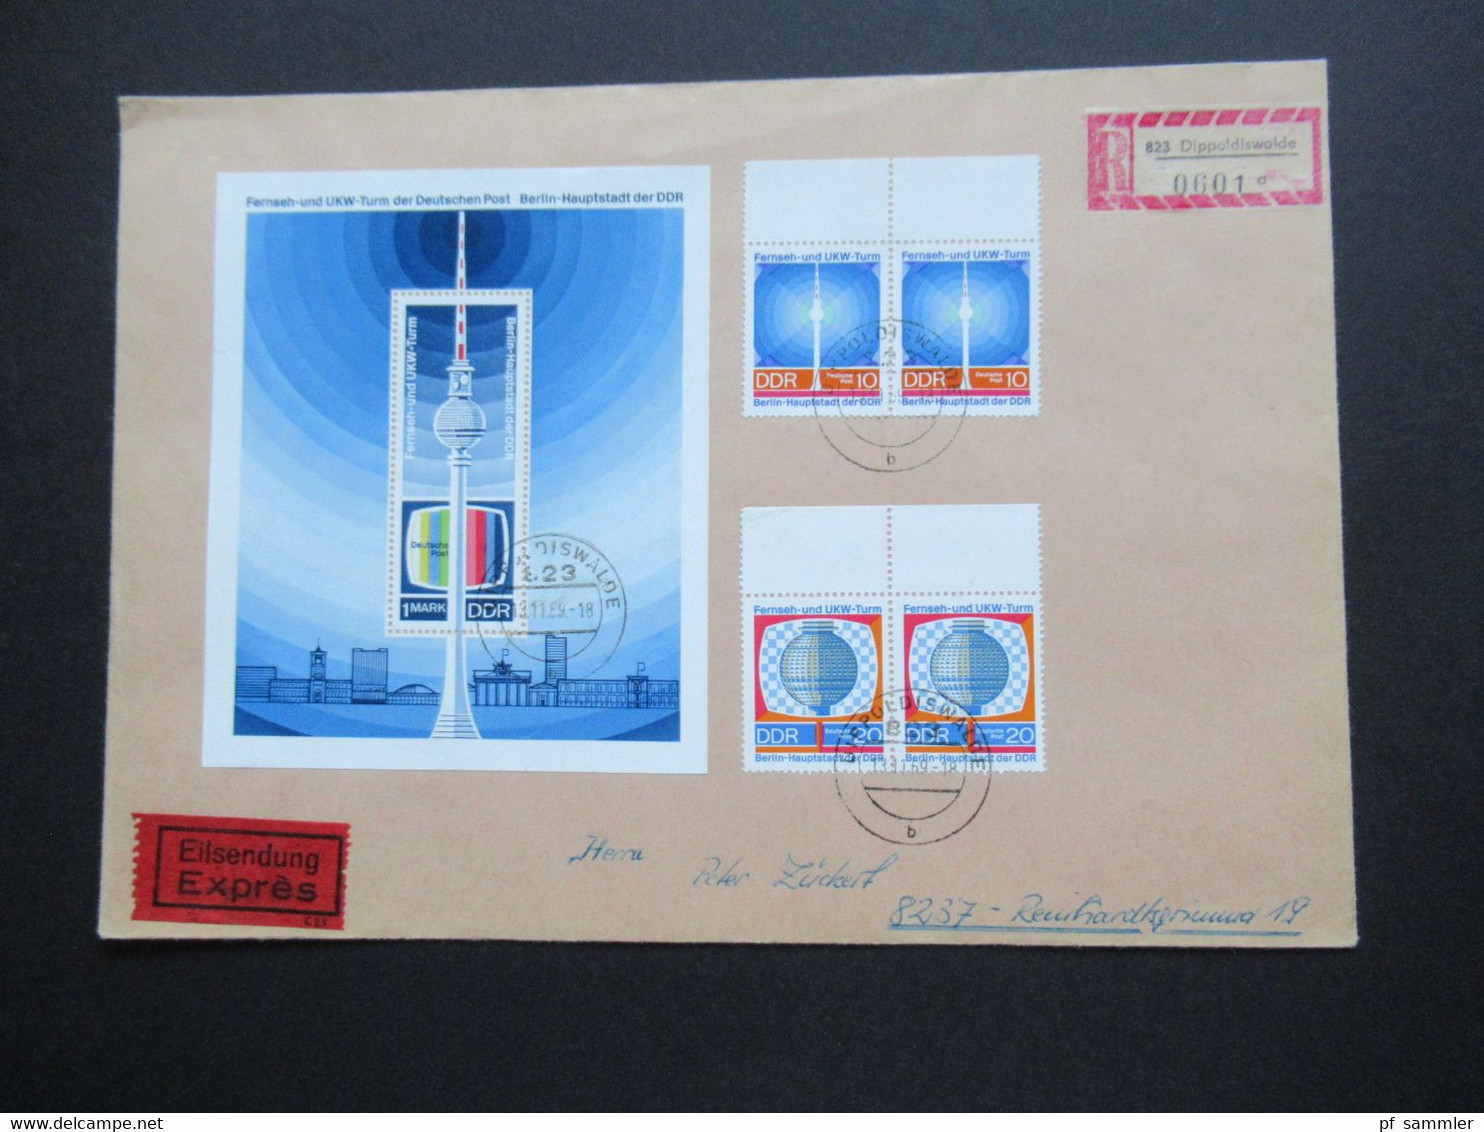 DDR 1969 Eröffnung UKW Turm Der Post Nr. 1509 / 1510 Und Block 30 MiF Eilsendung Express Einschreiben Dippoldiswalde - Covers & Documents